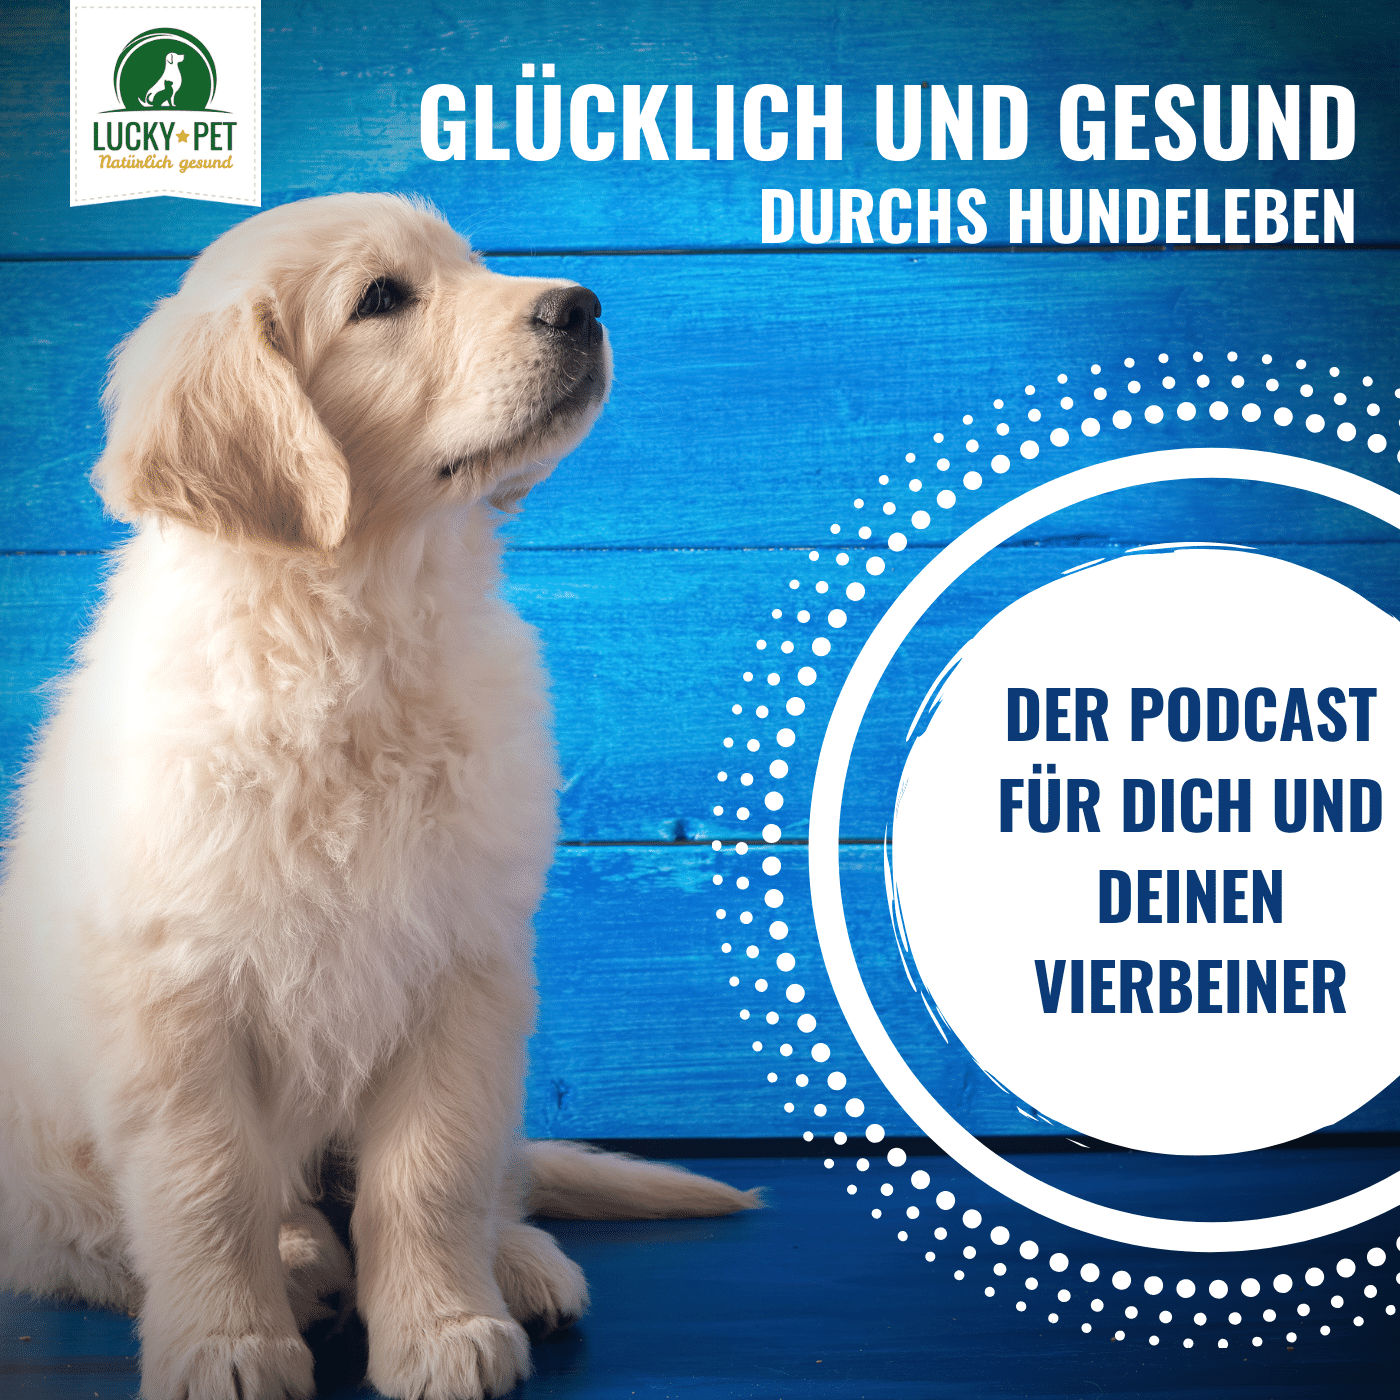 Glücklich und gesund durchs Hundeleben - Podcast